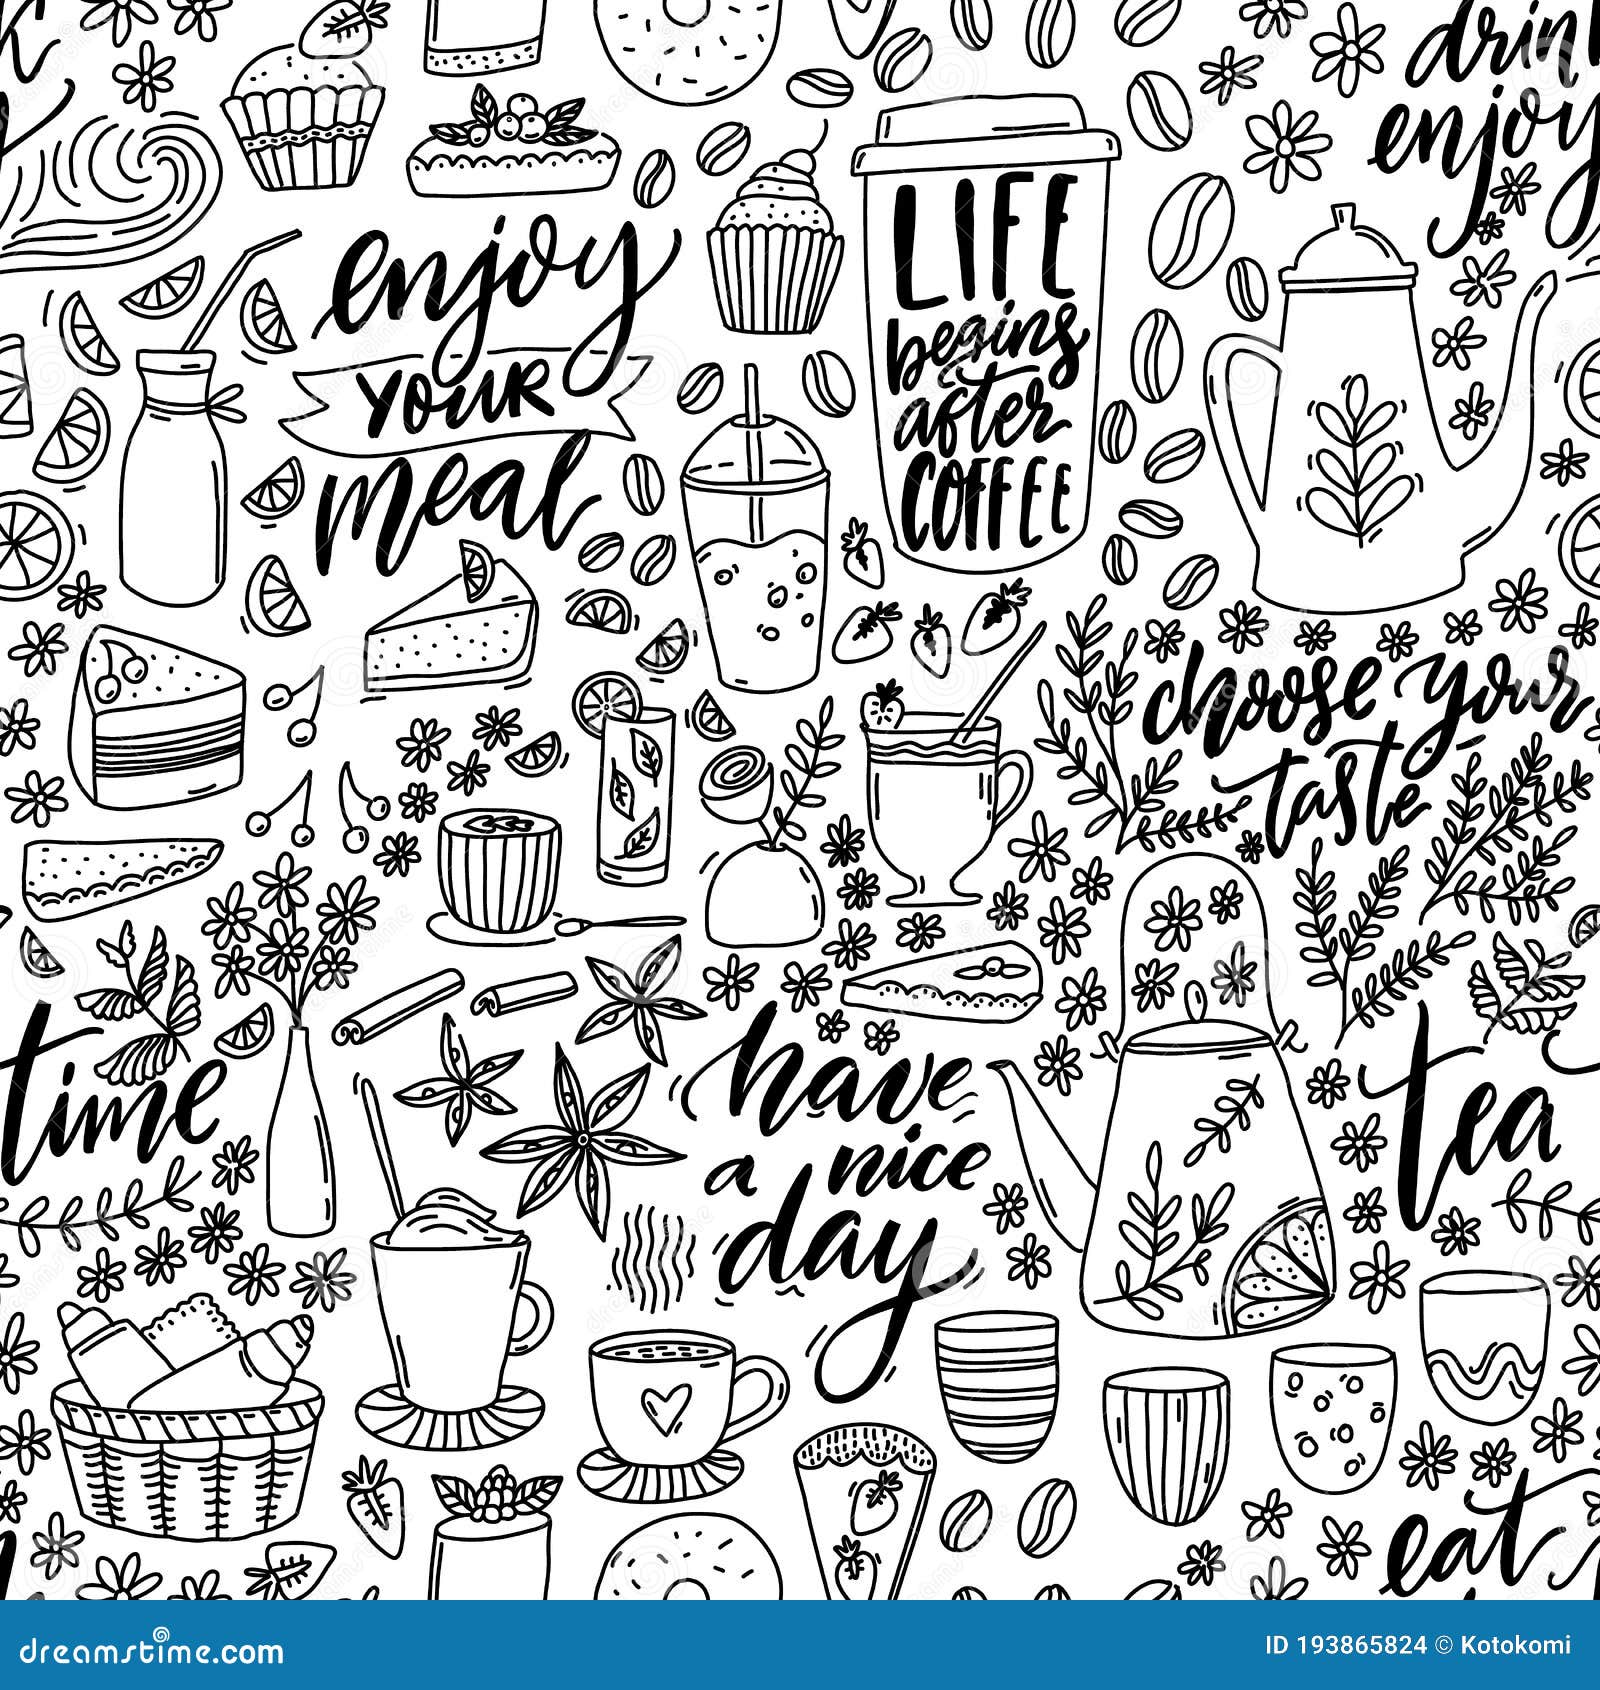 Các mẫu Cafe Doodle Seamless Pattern là những thiết kế vừa ngộ nghĩnh lại vừa phóng khoáng. Với những hình ảnh cắt xén vui nhộn và phối màu độc đáo, chúng sẽ làm cho không gian quán cà phê của bạn trở nên thú vị và hấp dẫn hơn bao giờ hết.